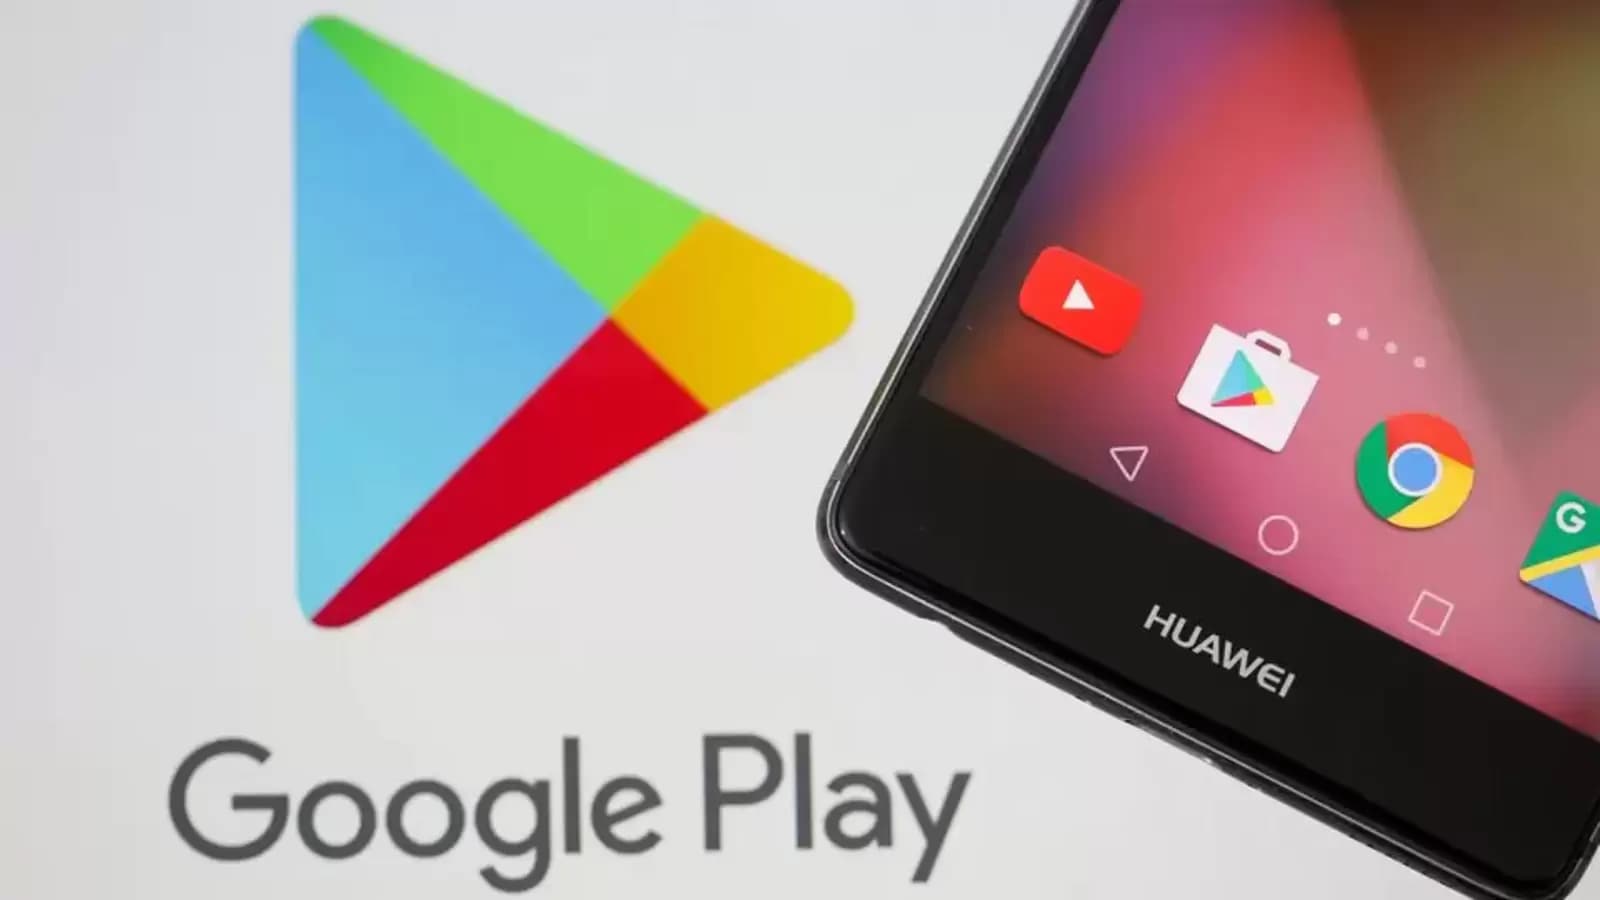 لدغة سيئة!  يكتشف متجر Google Play 4 تطبيقات خطيرة ؛  هل قمت بتنزيله؟  احذف الان